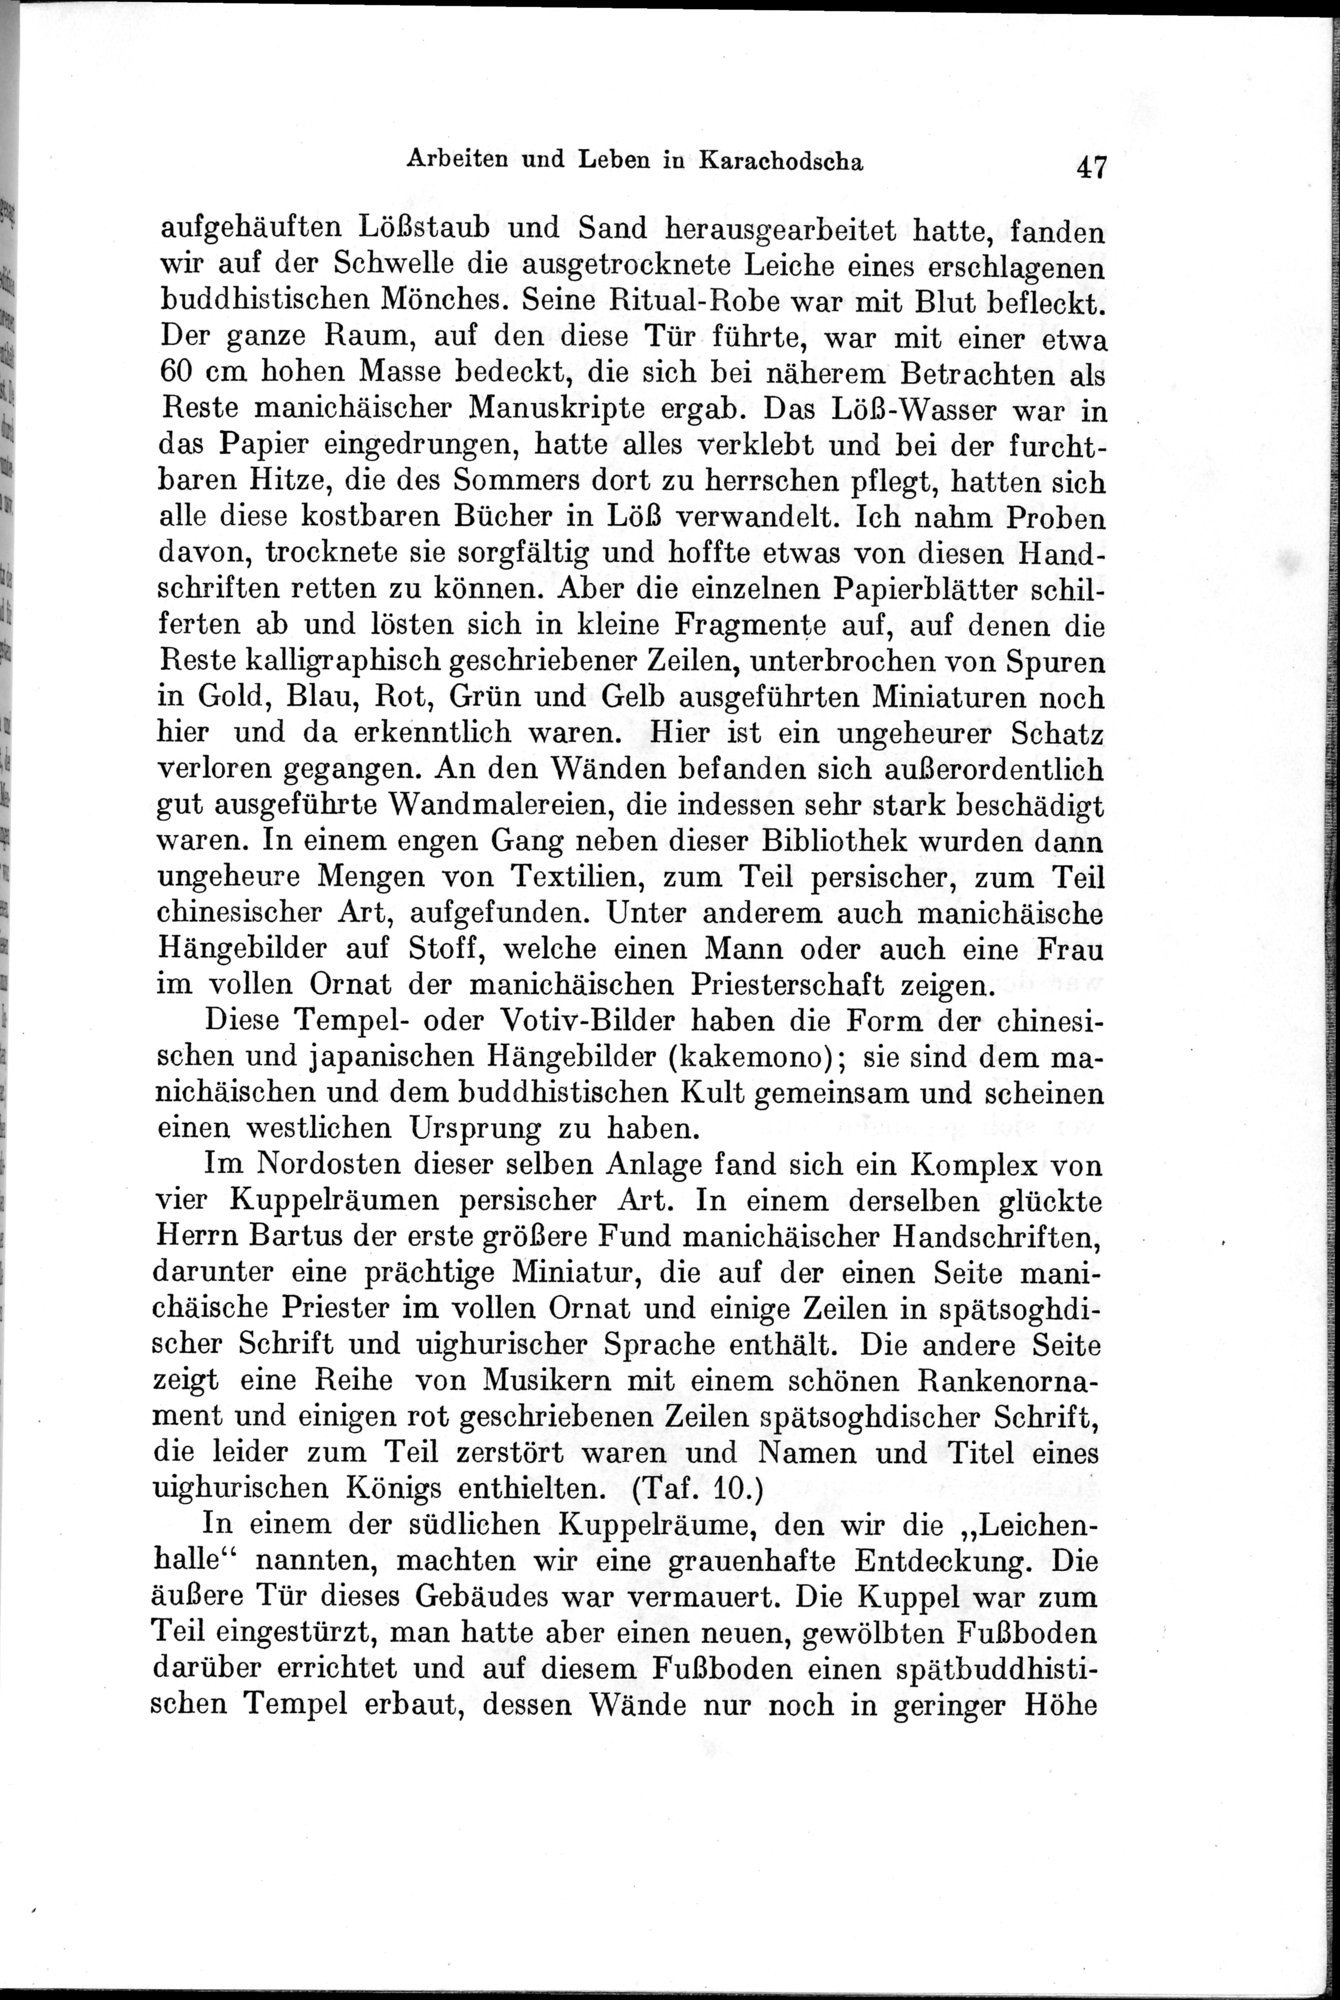 Auf Hellas Spuren in Ostturkistan : vol.1 / Page 73 (Grayscale High Resolution Image)